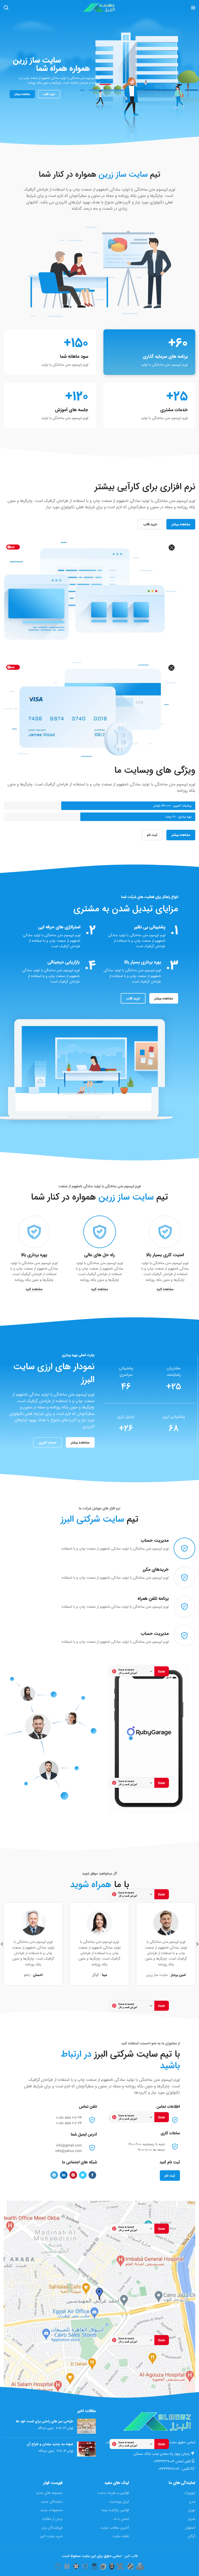  تصویر سایت شرکتی البرز در حالت تبلت